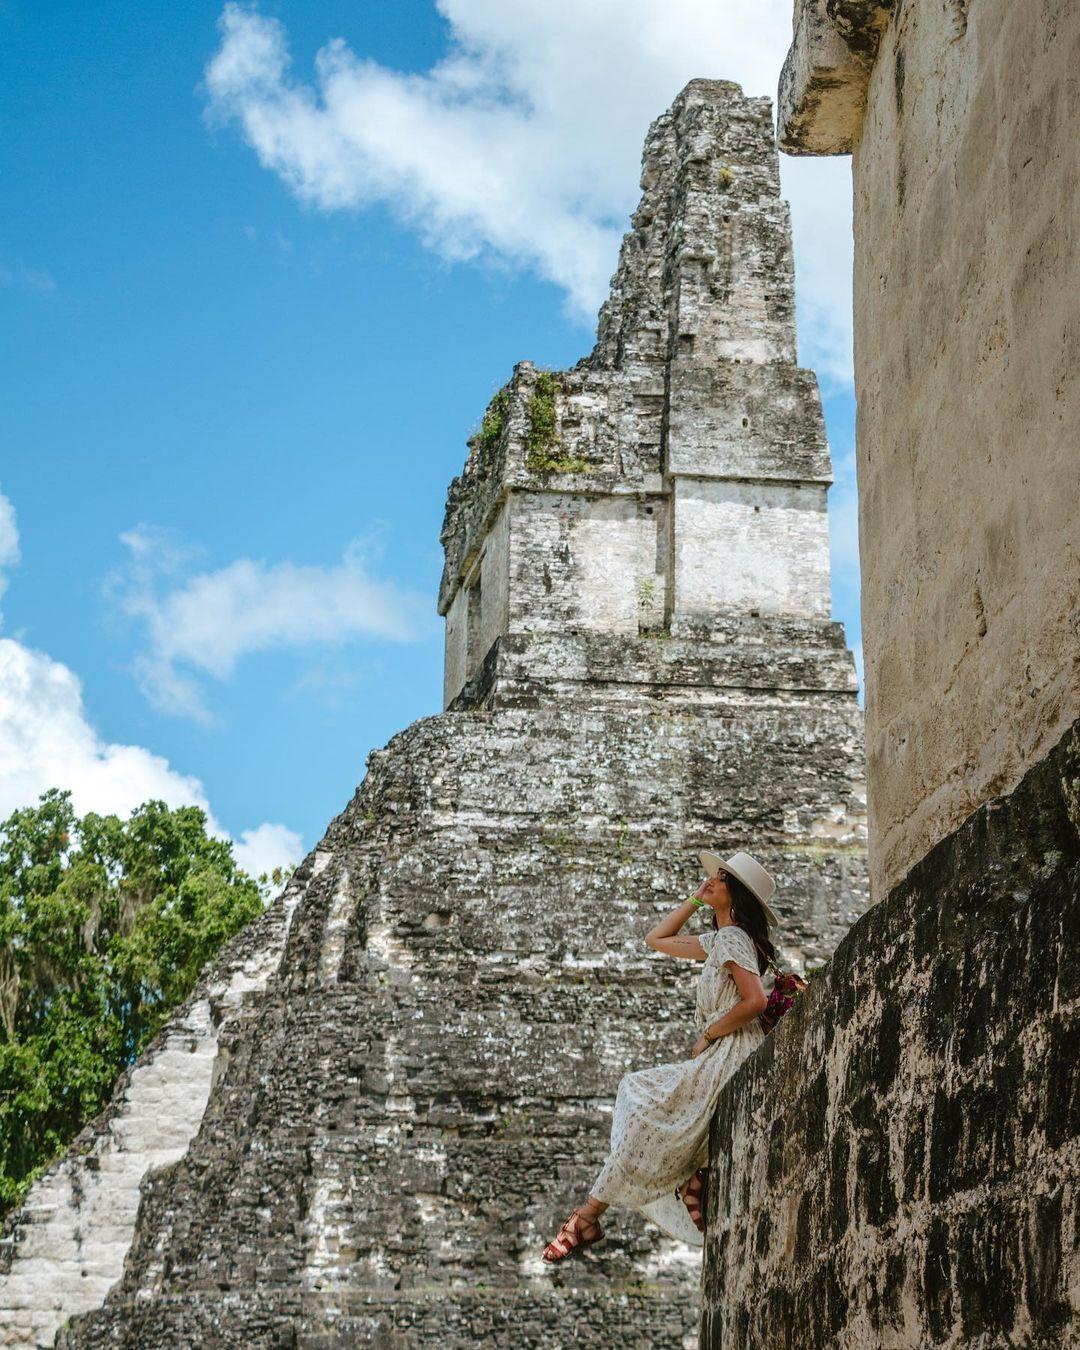 class="content__text"
 Una experiencia inolvidable la que vivimos ayer junto a @samsungguatemala en un tour por la isla de Flores, peten y el Parque Nacional Tikal. 🍃🐒 

Les cuento que era mi primera vez visitando Peten (yo se shockeante) pero me la goze tanto que quiero volver.E puse en “modo esponja” para aprender sobre Tikal, los mayas y tanta historia de guatemala con nuestro Guía el Señor Nixon.

Sinceramente una experiencia mágica que la pudimos capturar con sin fin de videos y fotos con #GalaxyZFlip4 ✨

…tengo que volver. #DespliegaGuate #GuatedesdeunFlip #travel #tikalnationalpark #peten 
 